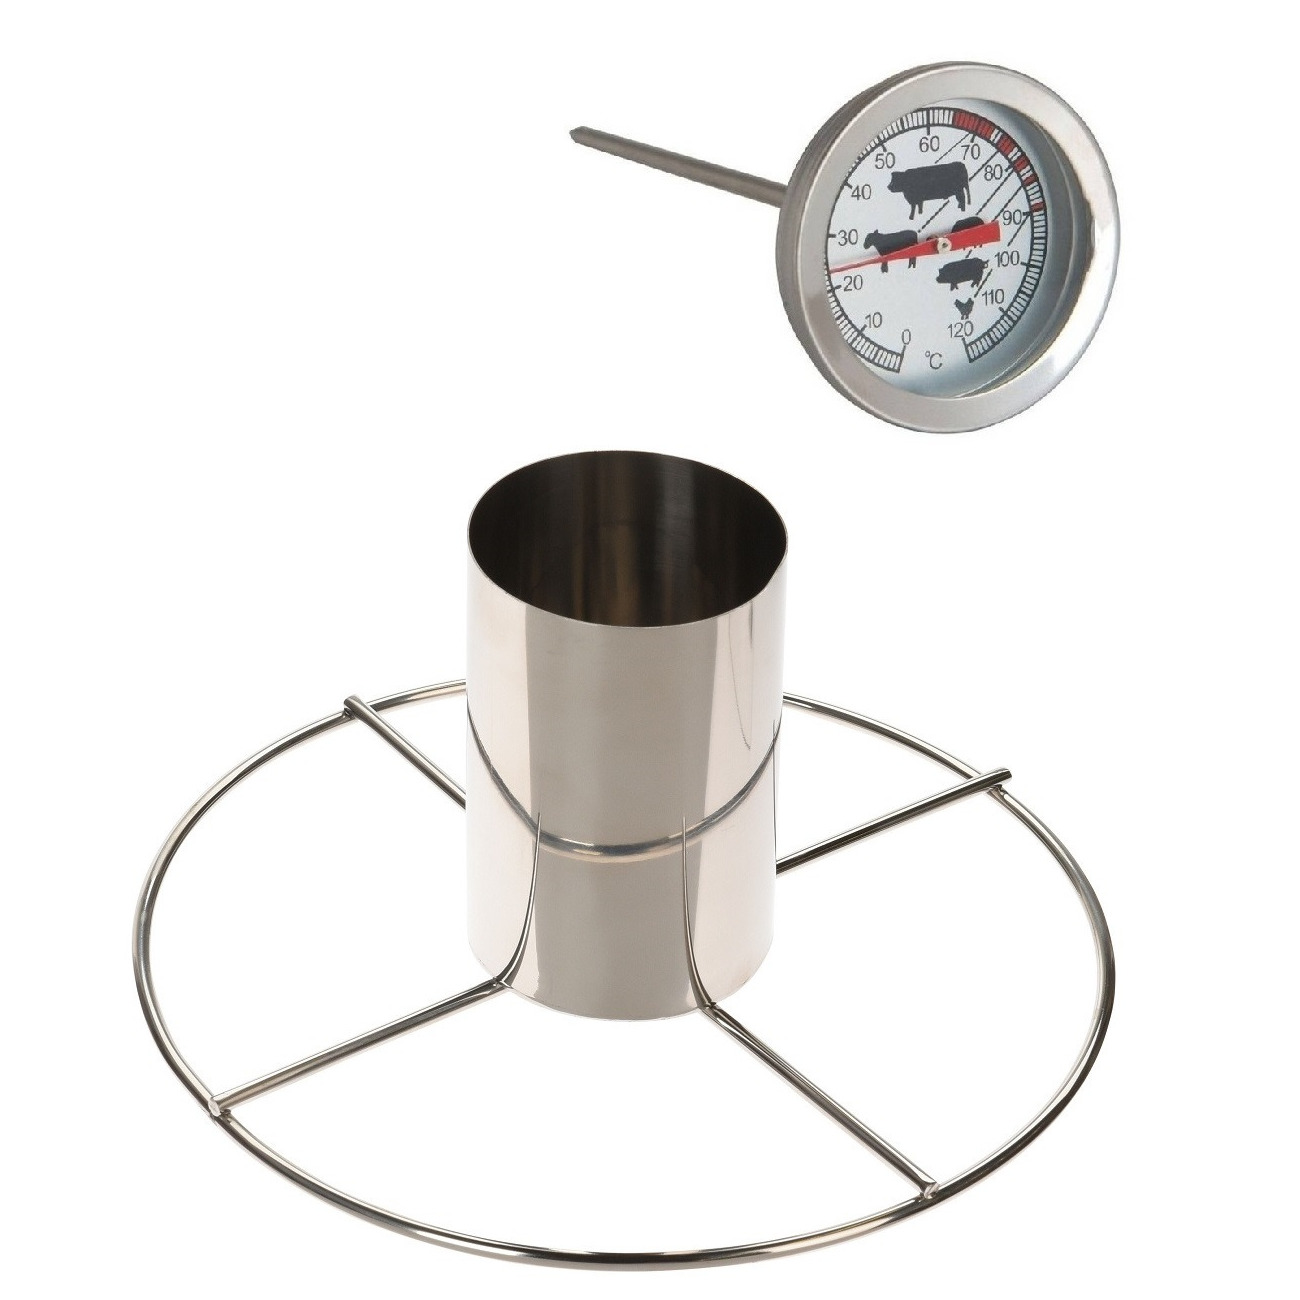 Kiprooster-kippengrill voor de barbecue-BBQ-oven RVS 20 cm met vleesthermometer-braadthermometer